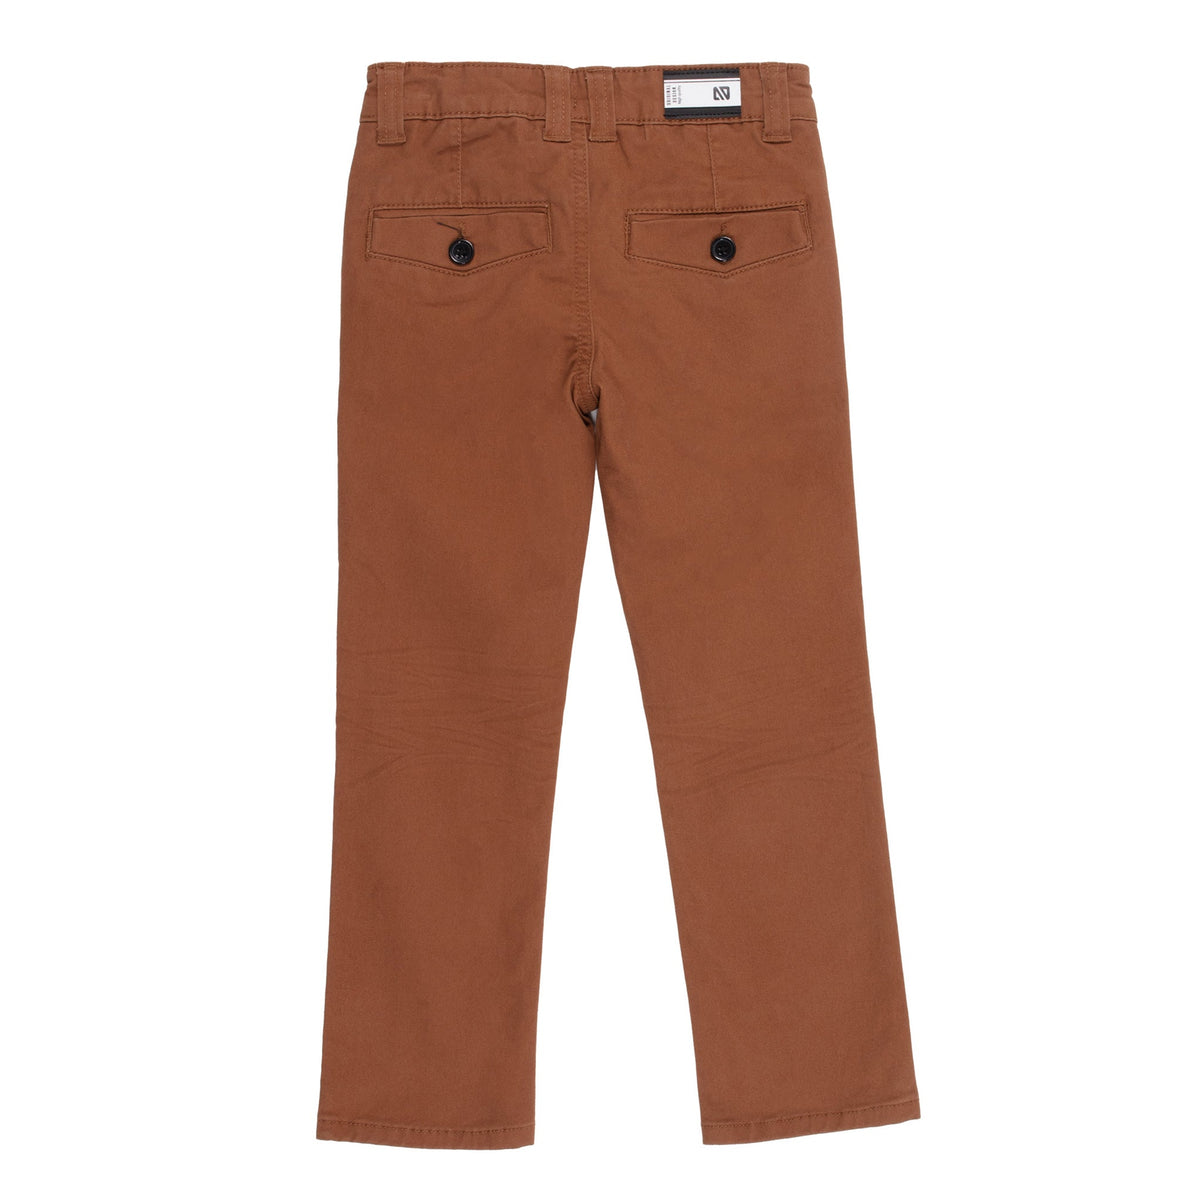 Pantalon pour enfant garçon par Nanö | F2225-04 Brun | Boutique Flos, vêtements mode pour bébés et enfants